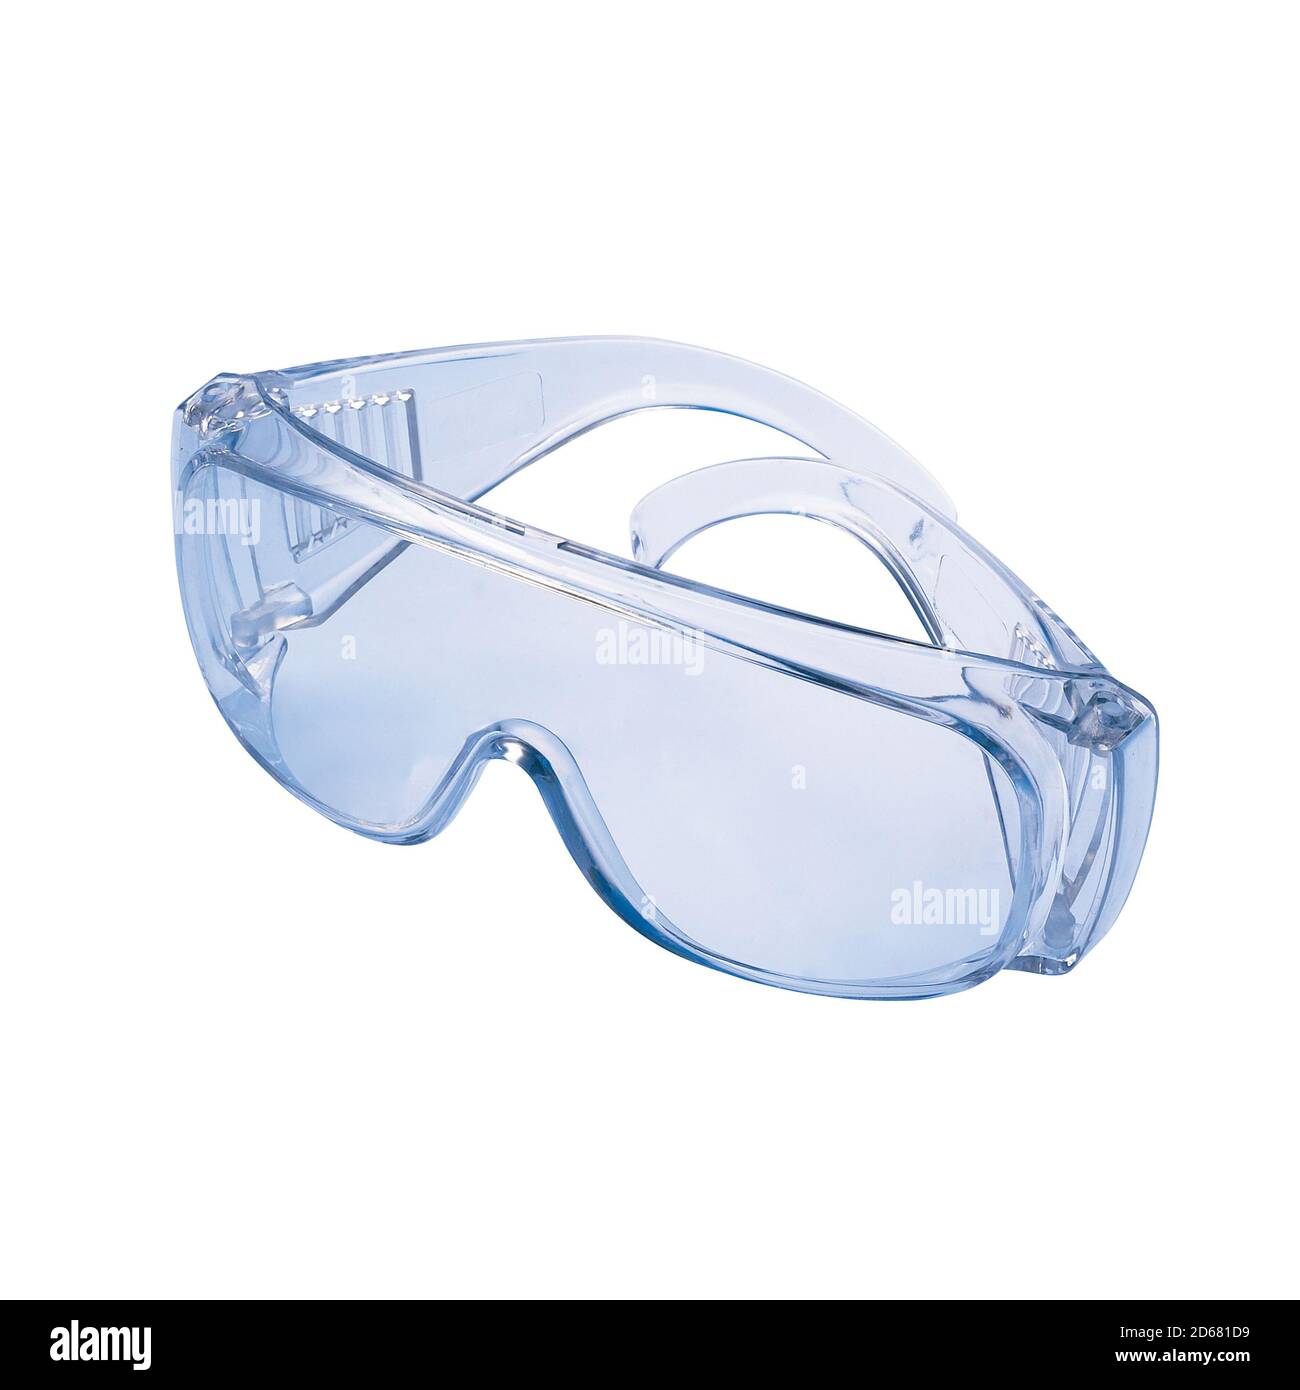 Lunettes de sécurité avec monture translucide et lentille transparente Banque D'Images